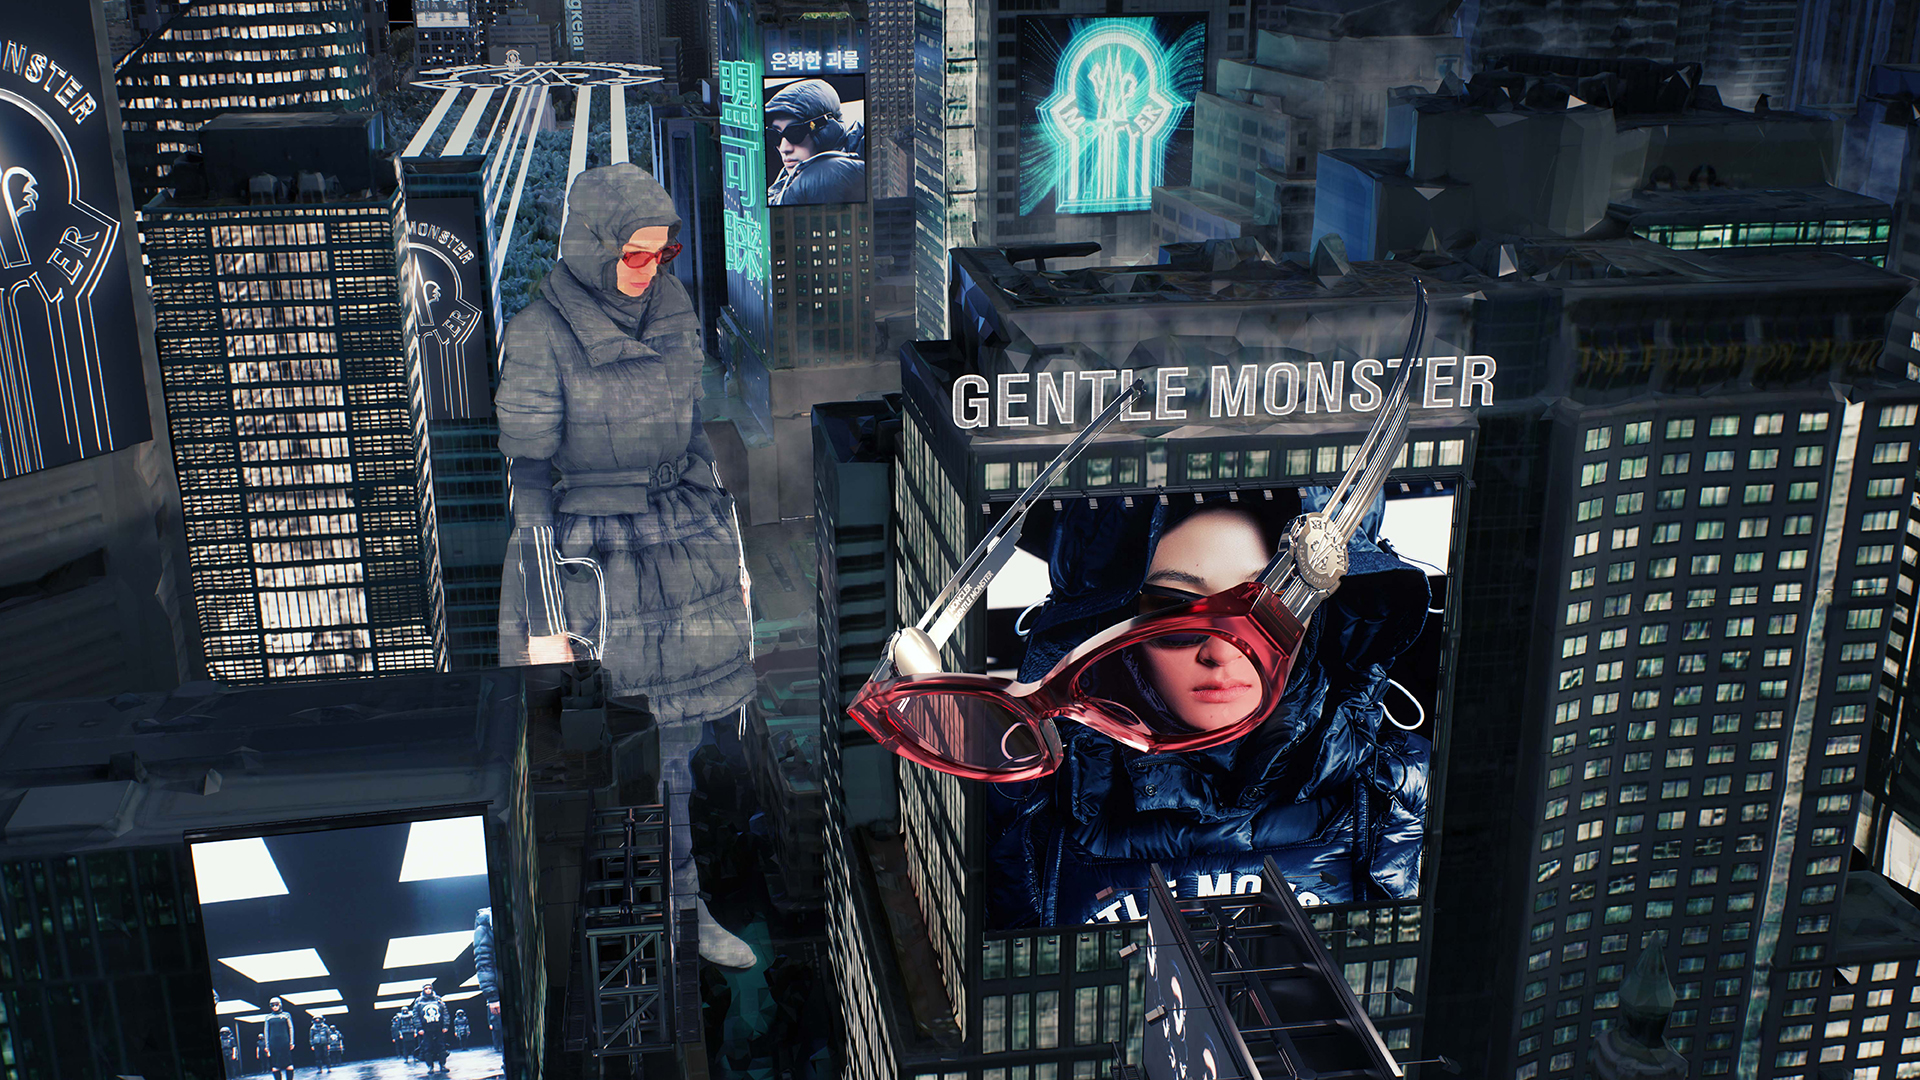 Gentle Monster + Moncler Genius unite for futuristic collab